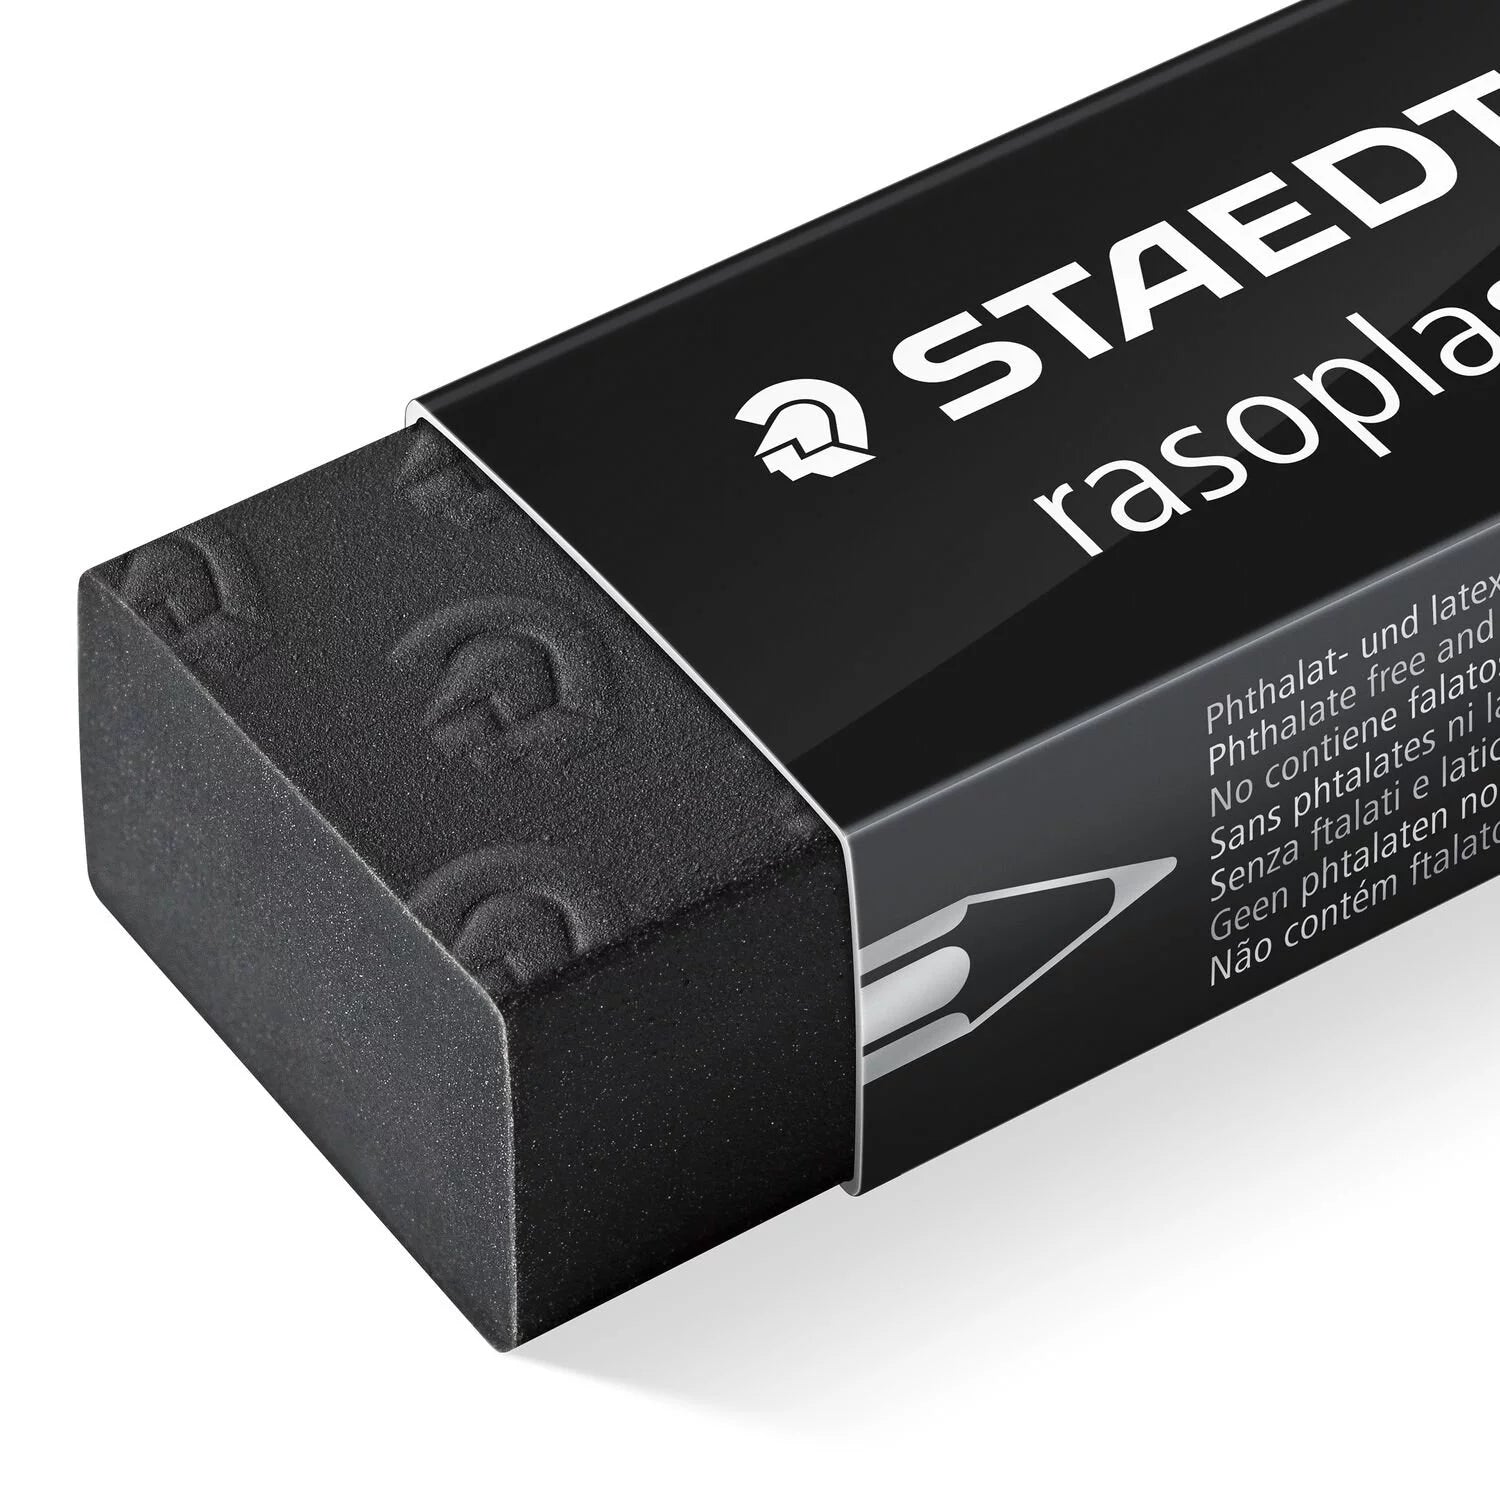 Sraedtler Rasoplast Set Of Eraser + Sharpener